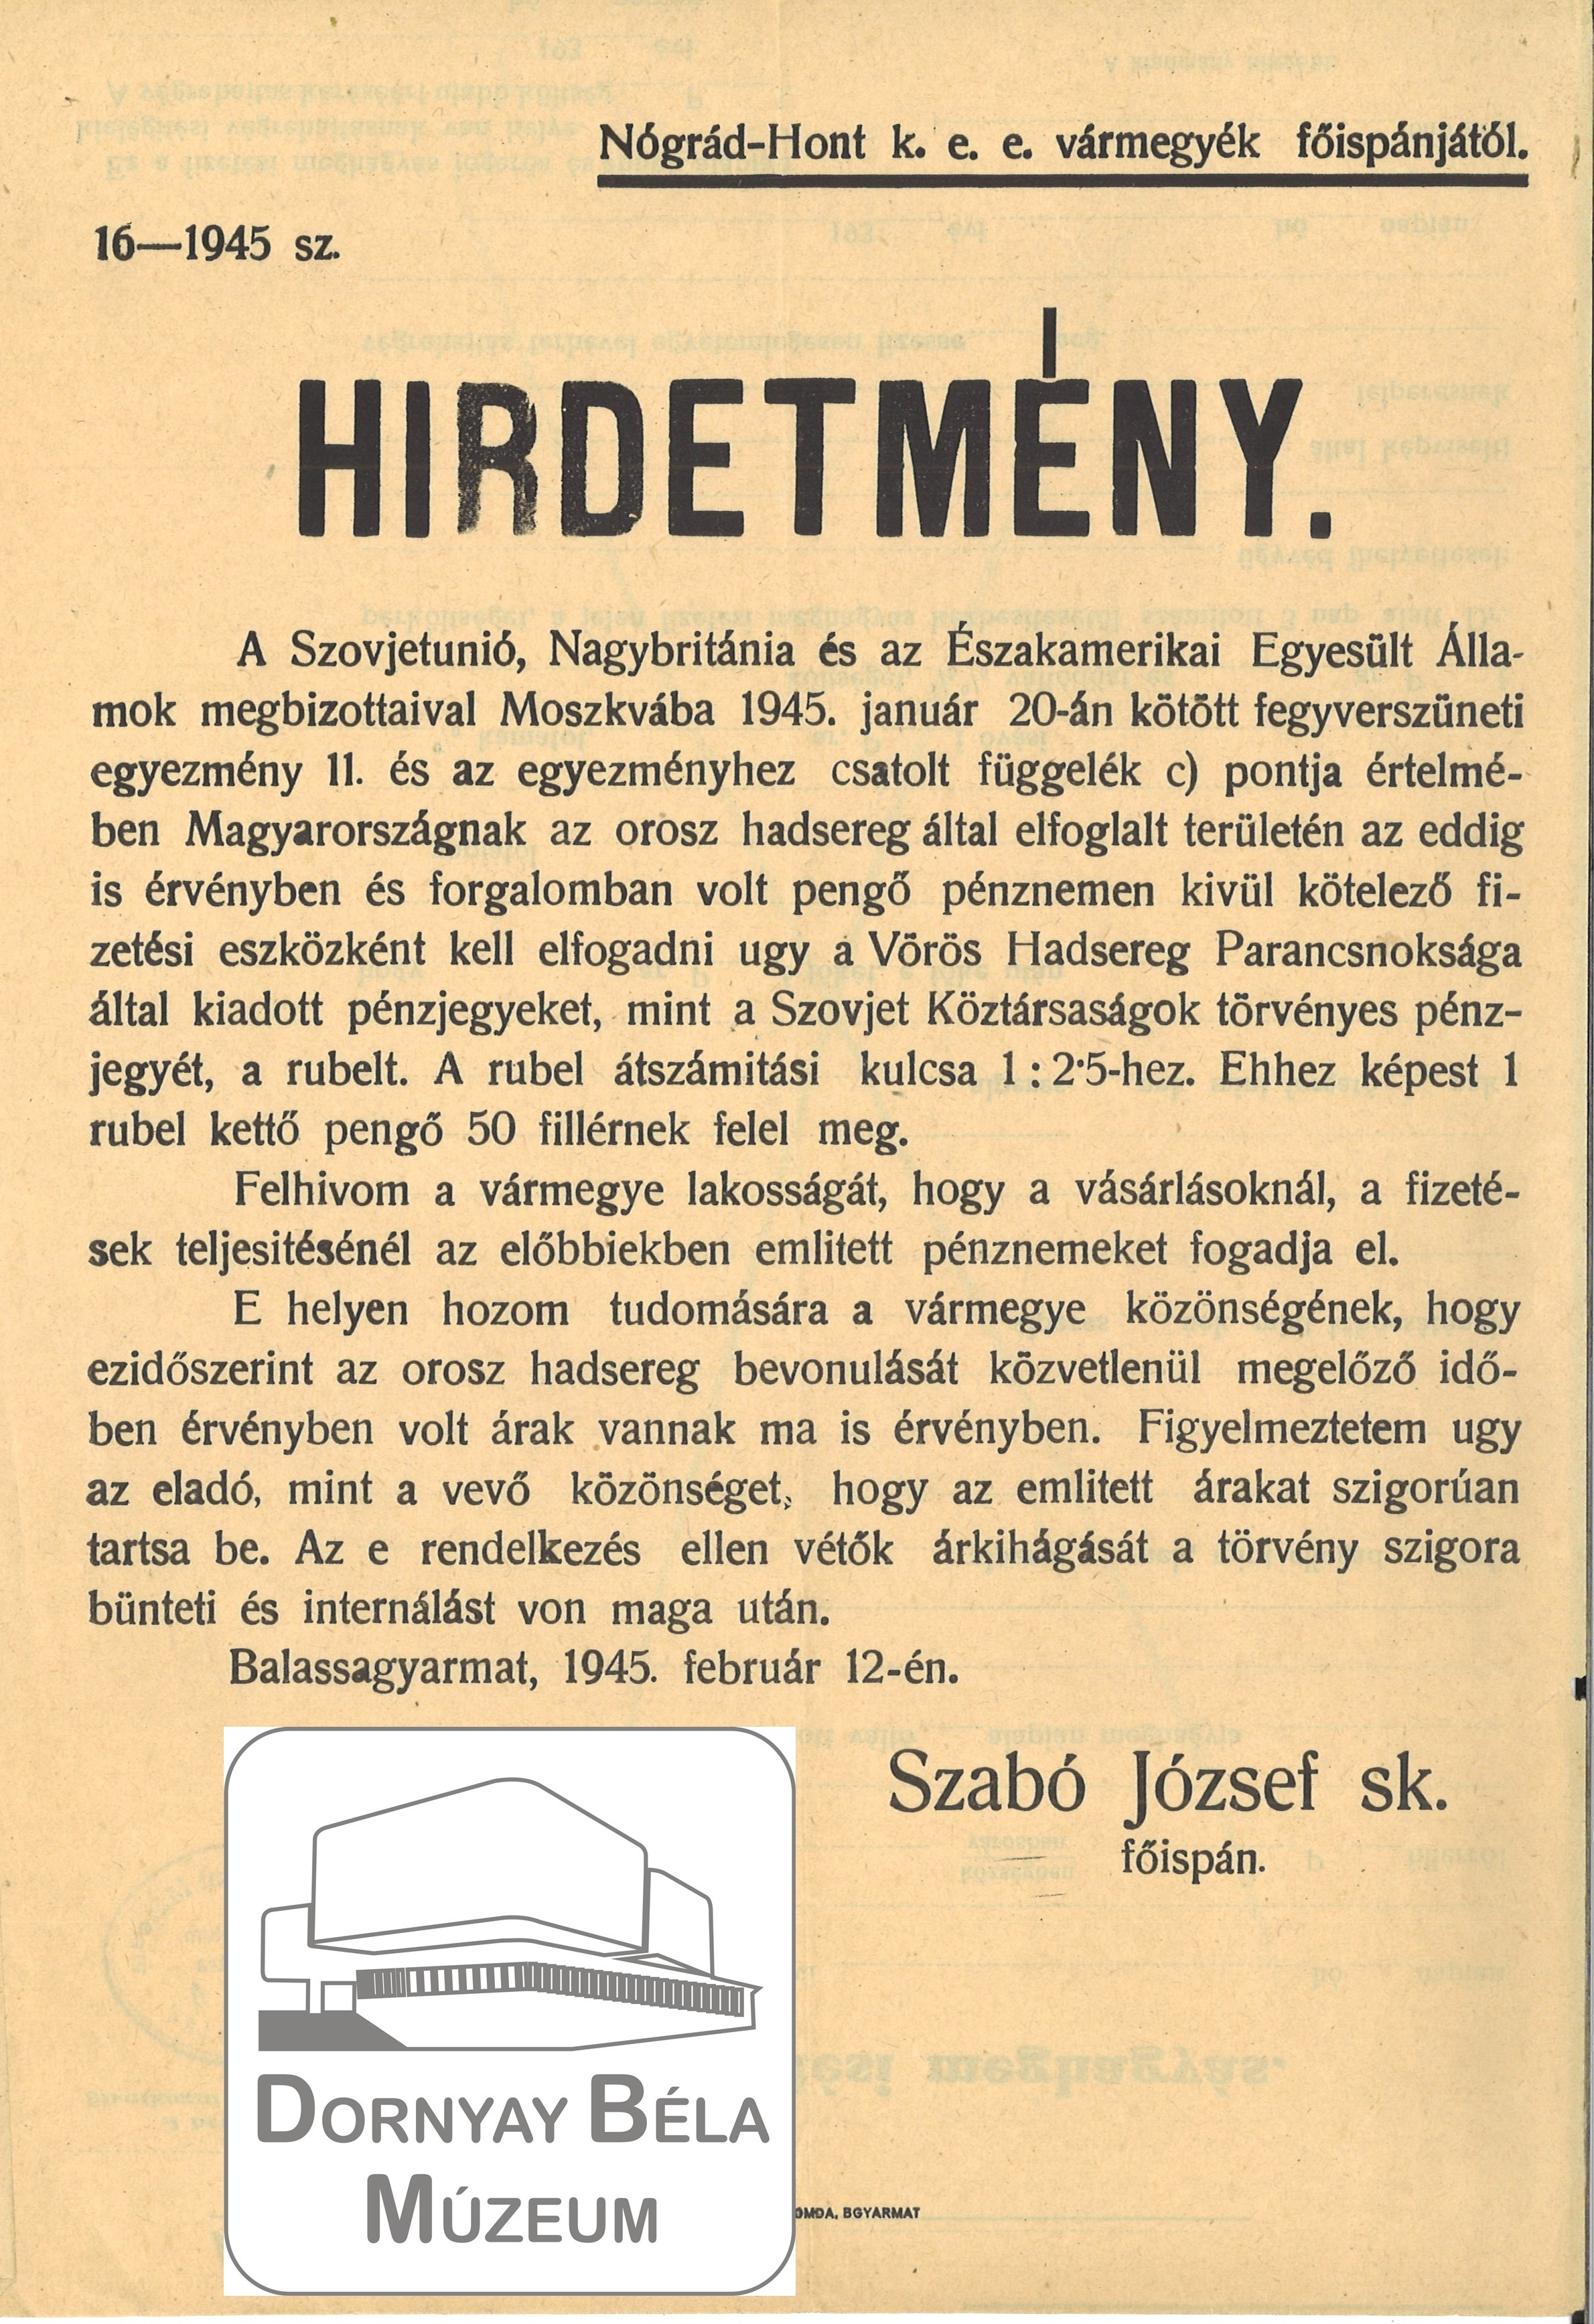 Rubel átszámítási kulcsa. (Bgy.1945.február 12. Szabó József fő...p) (Dornyay Béla Múzeum, Salgótarján CC BY-NC-SA)